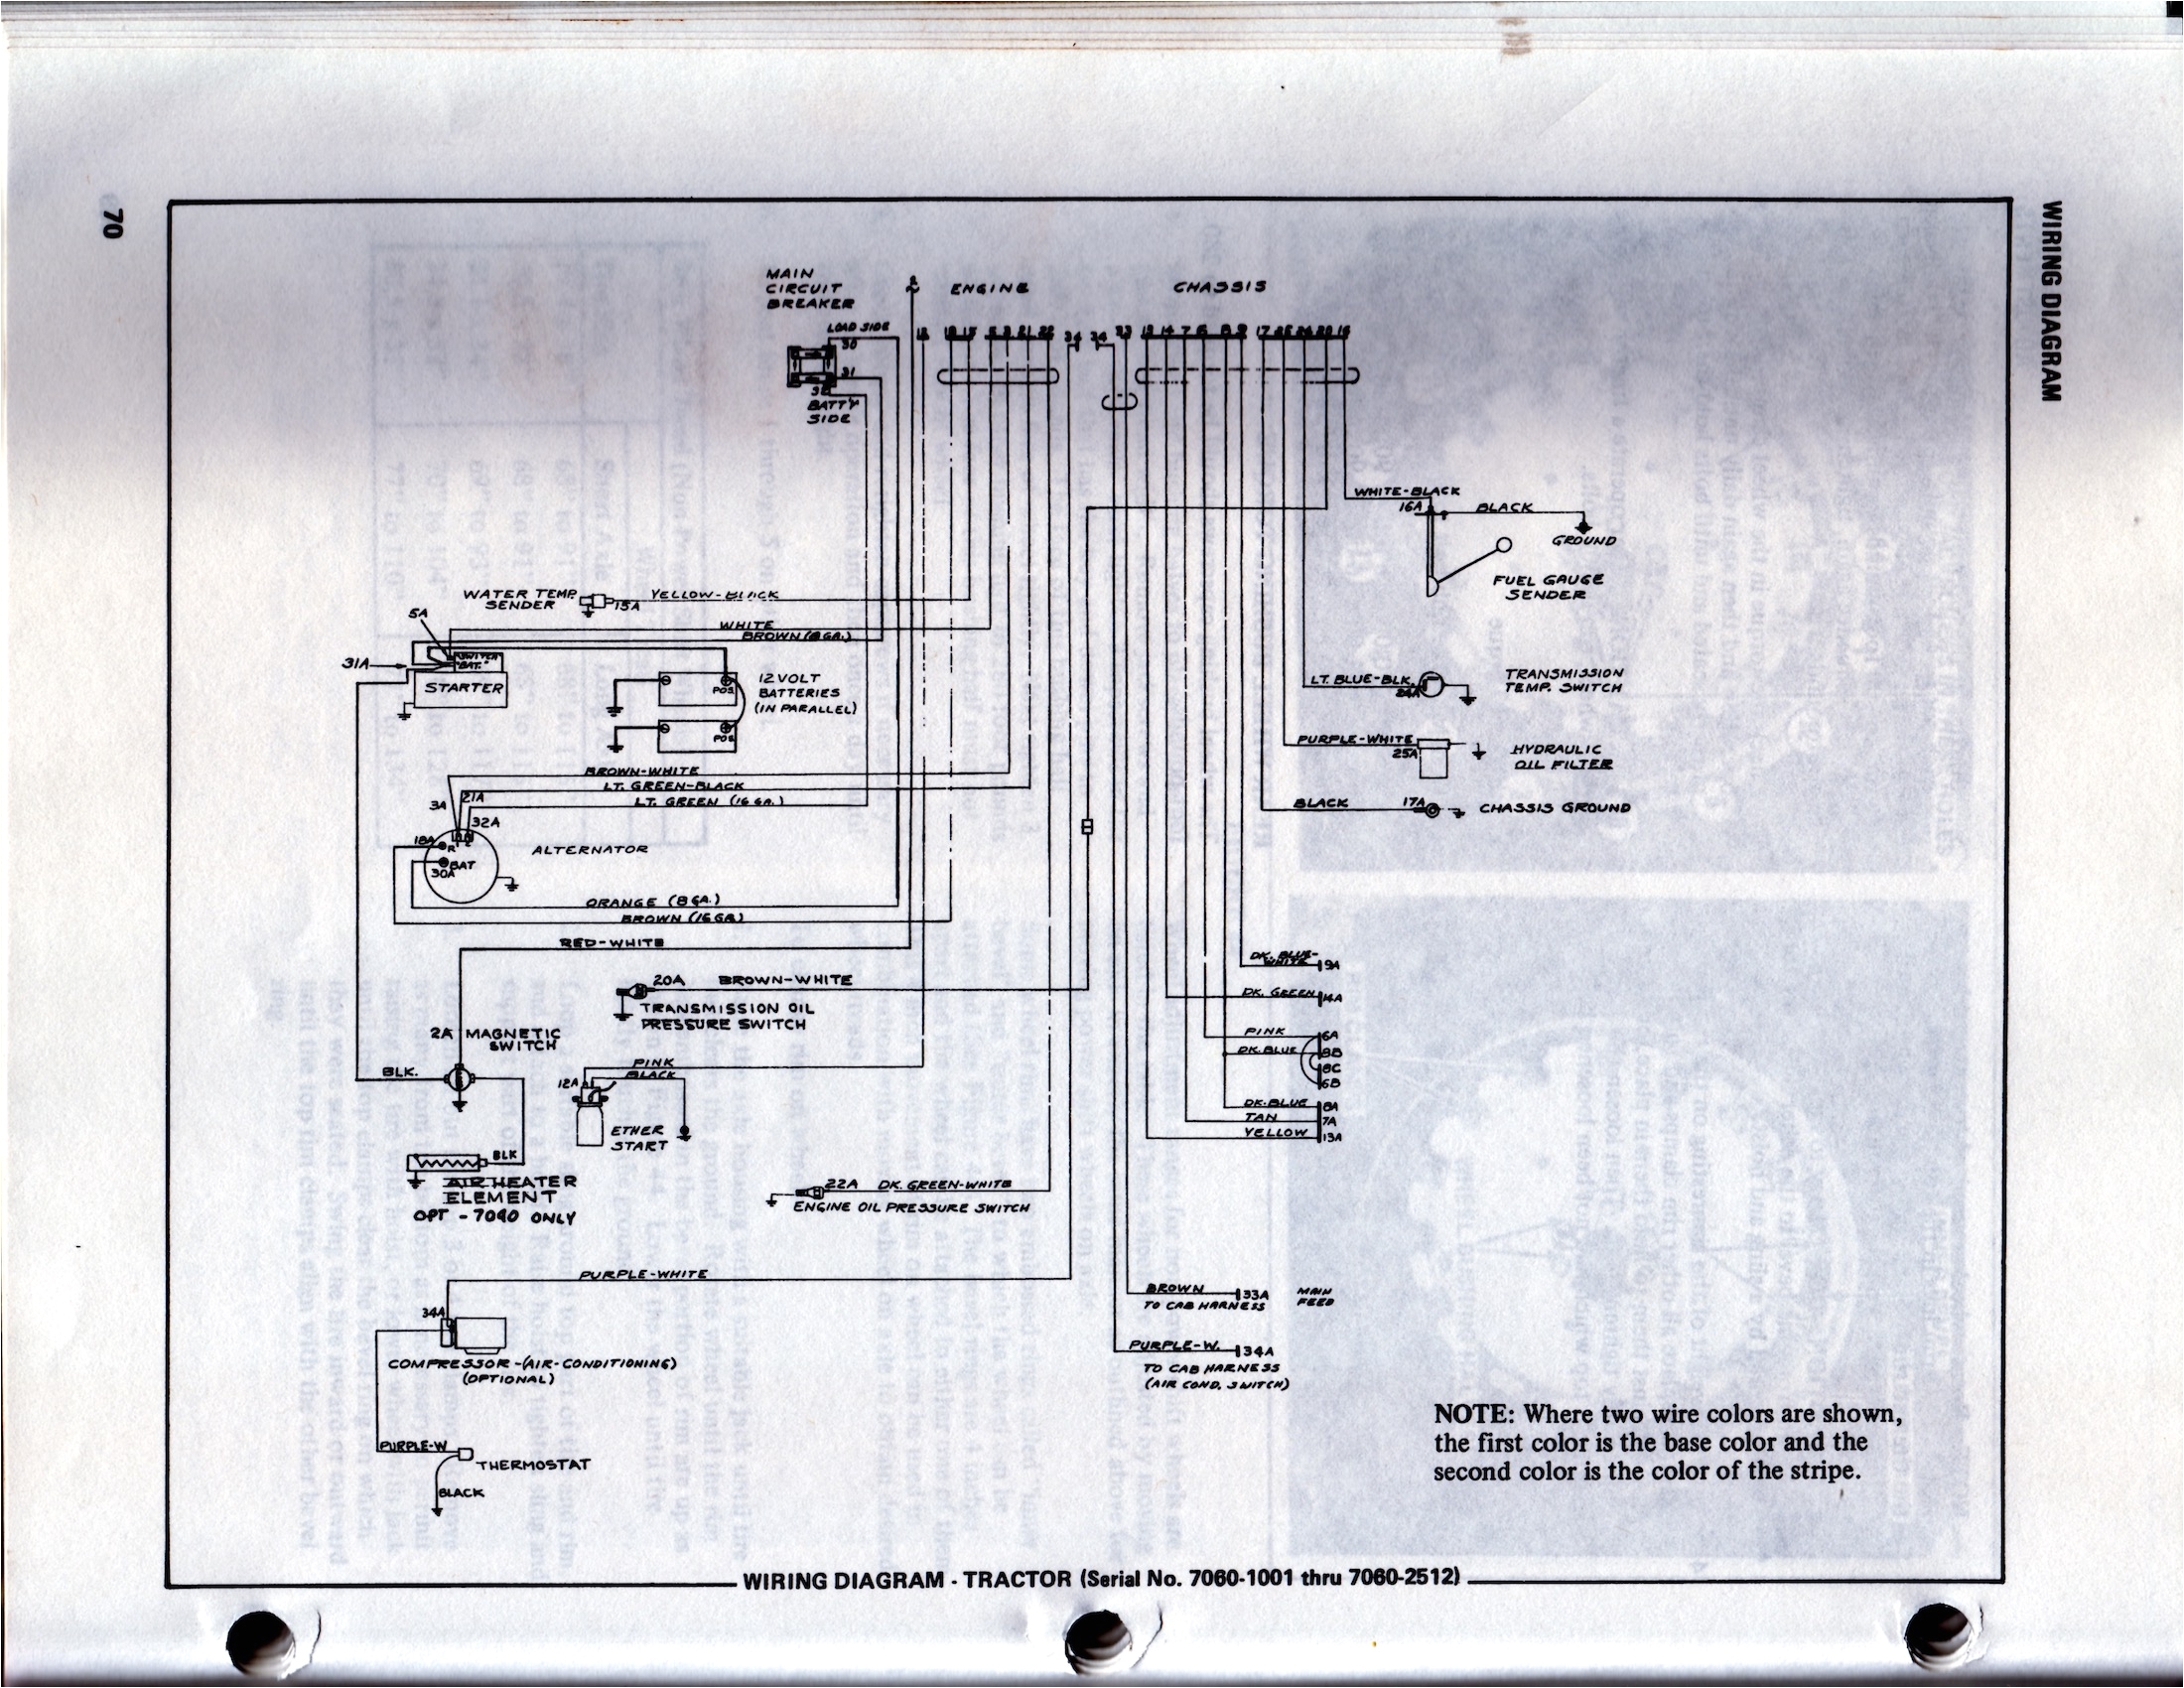 allis 7060 wiring diagram schematic allischalmers forum 7060 allis chalmers wiring diagrams